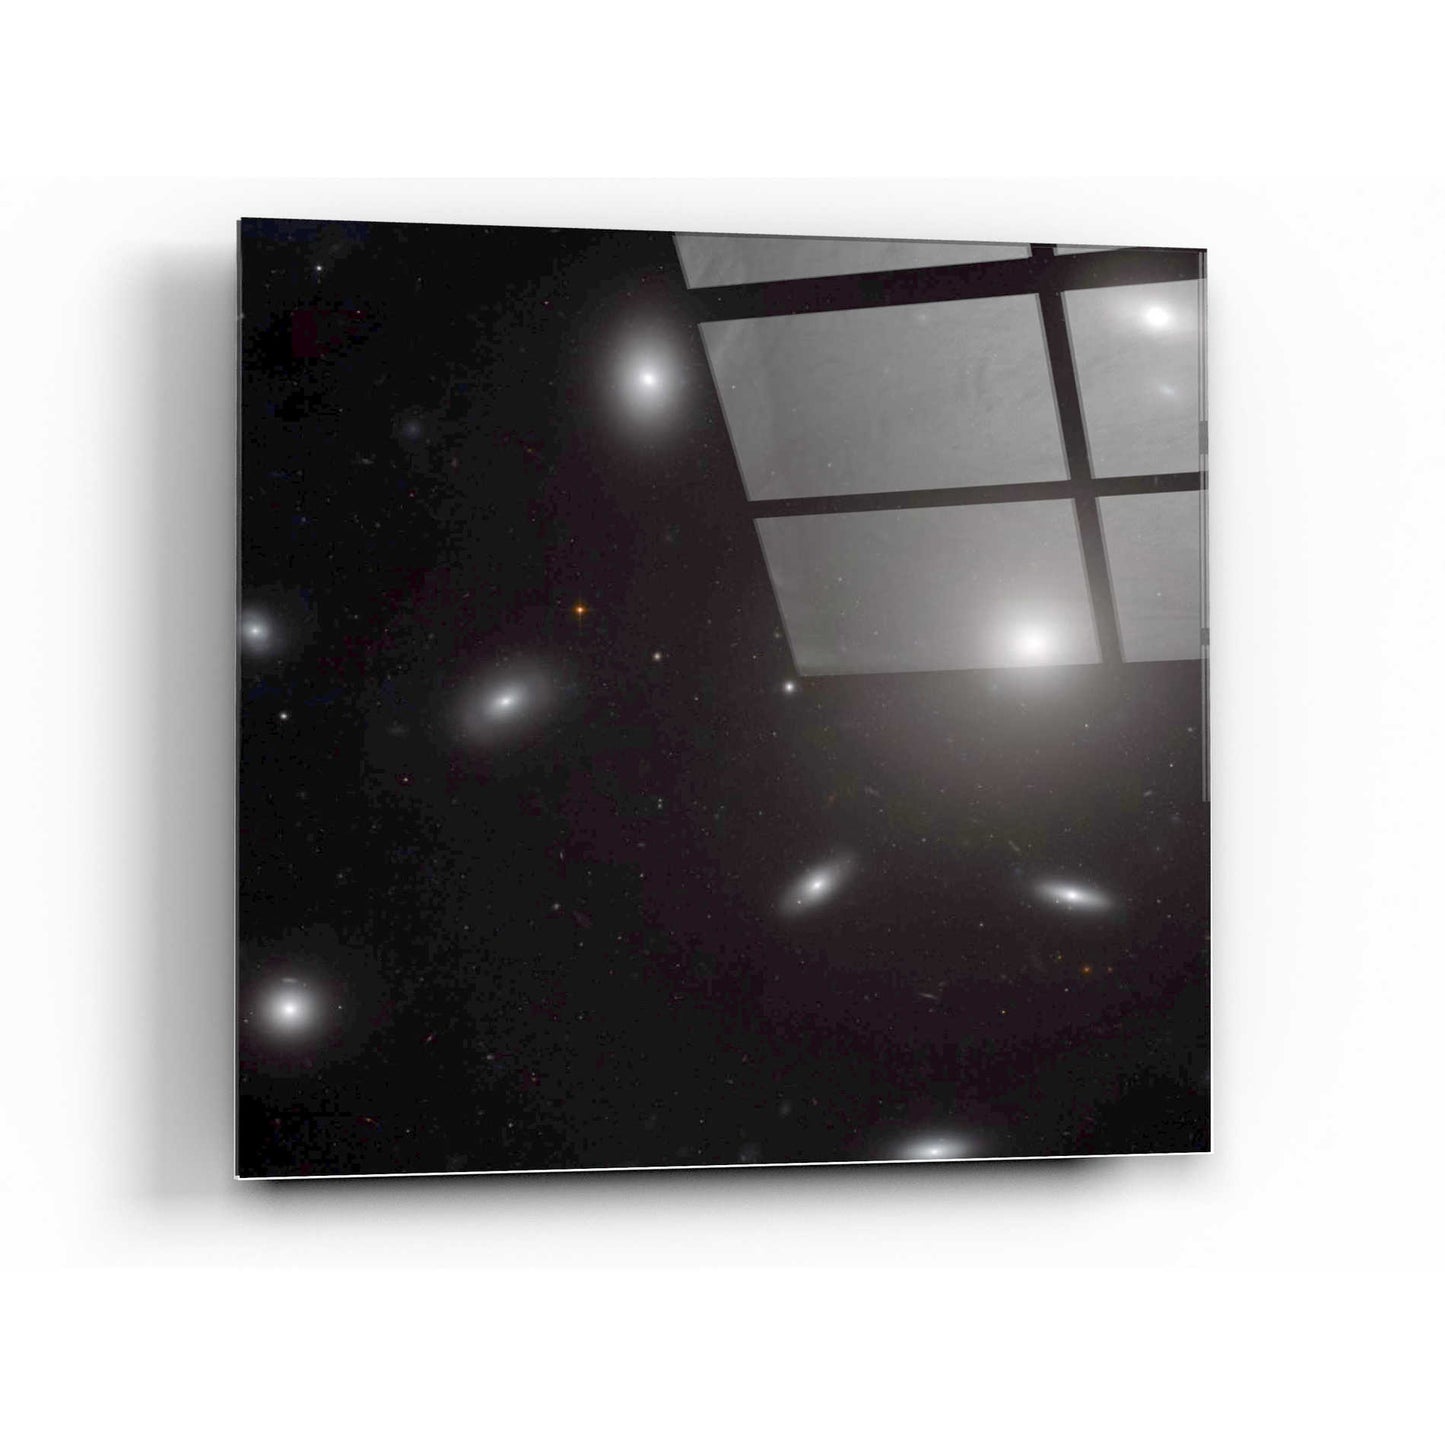 Epic Art "NGC 4874" Hubble Space Telescope Acrylic Glass Wall Art,36x36